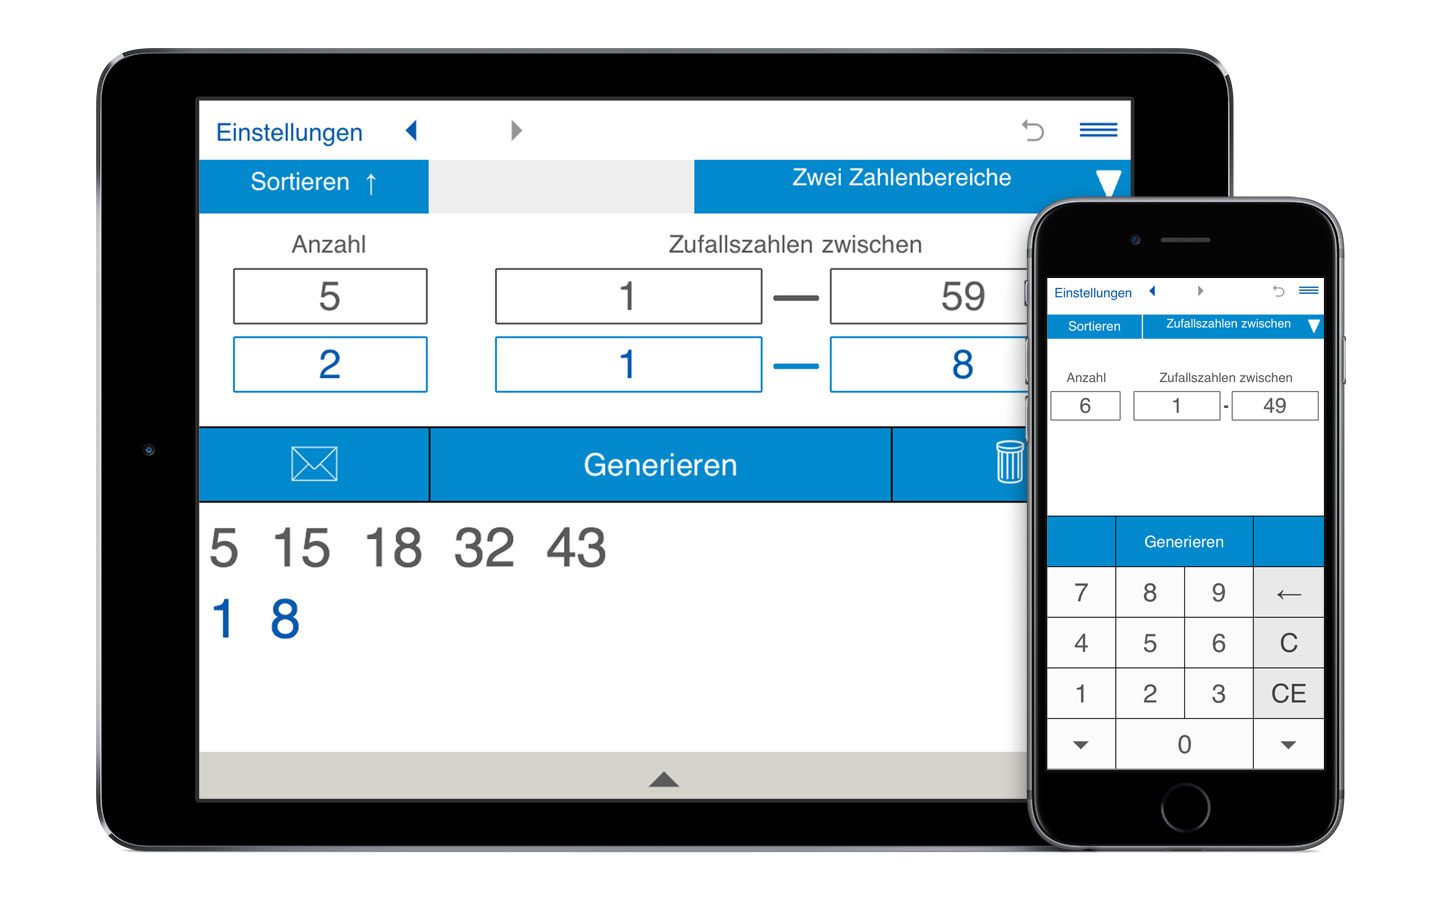 Zufallszahlengenerator für iPhone, iPad, iPod touch, Android